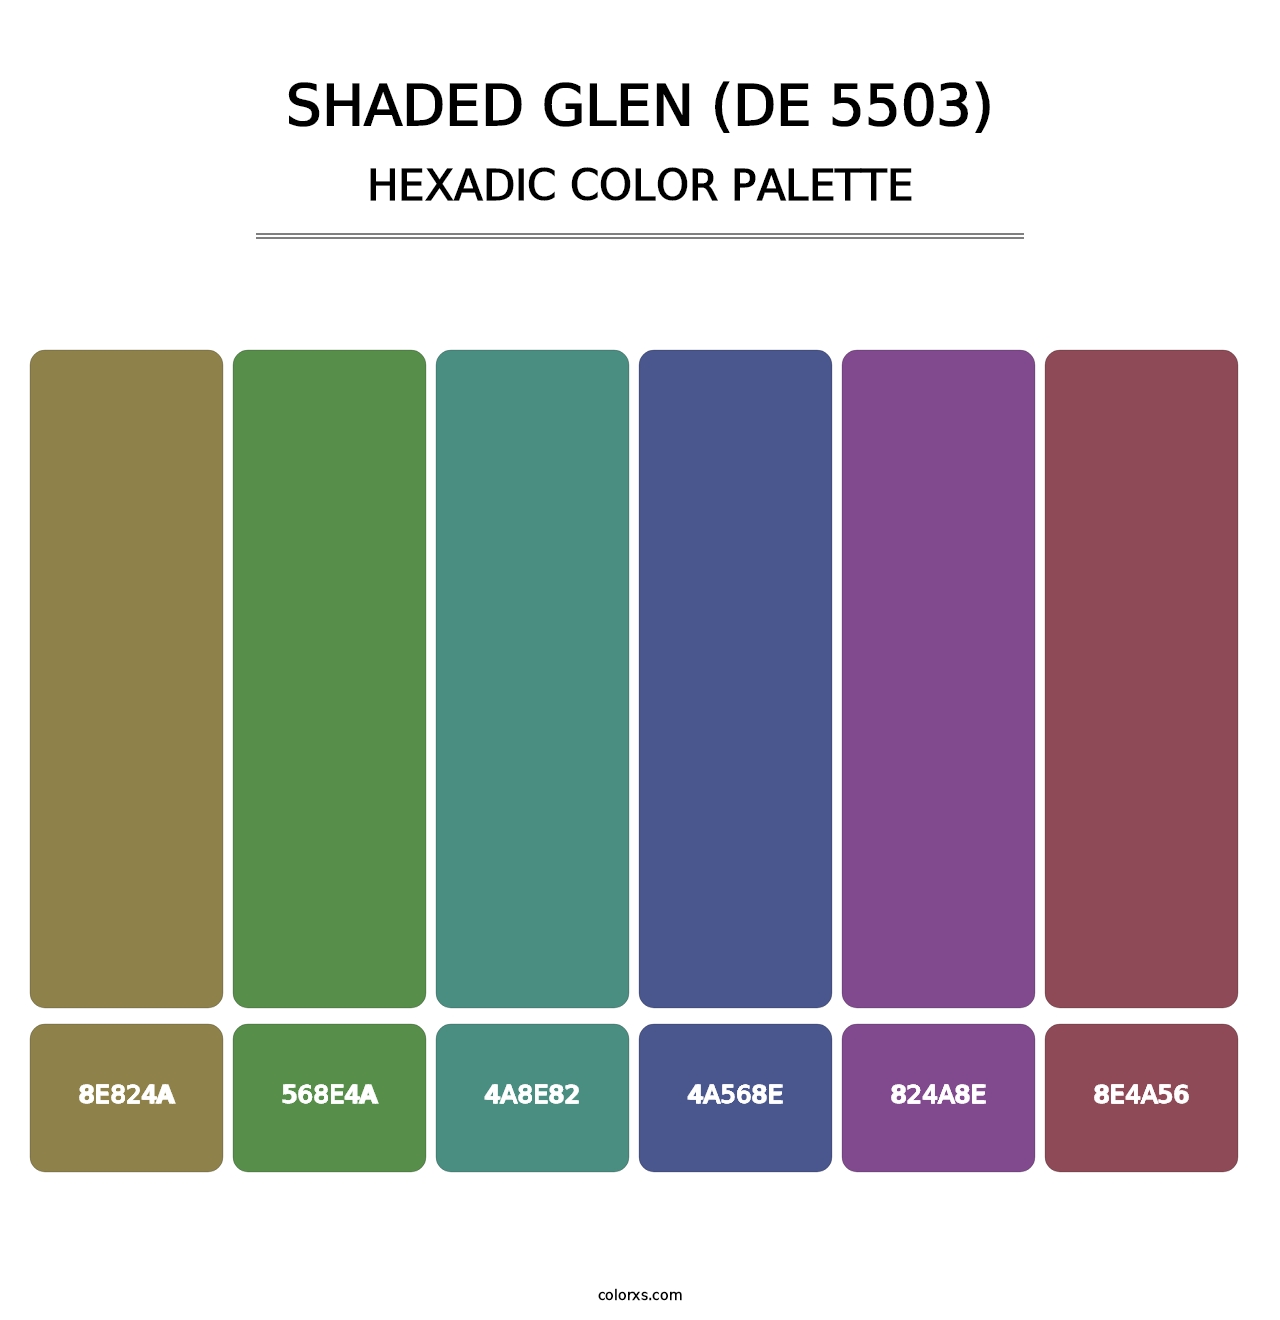 Shaded Glen (DE 5503) - Hexadic Color Palette